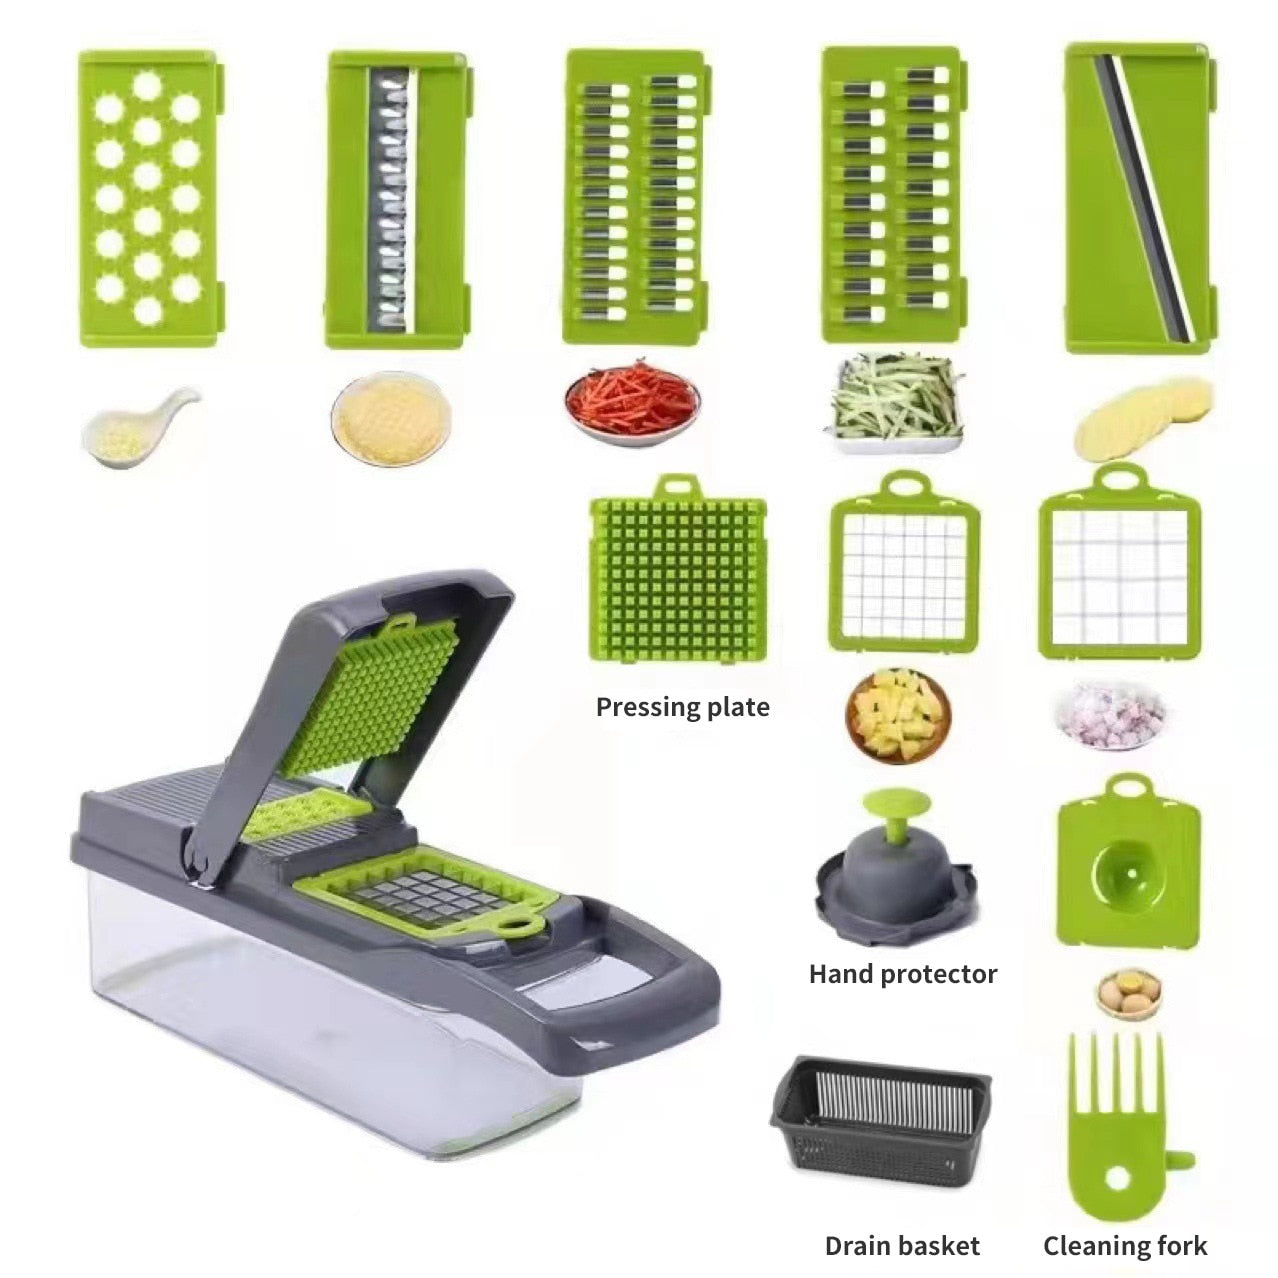 12-in-1 Multifunctional Vegetable Slicer/Cutter/Shredders